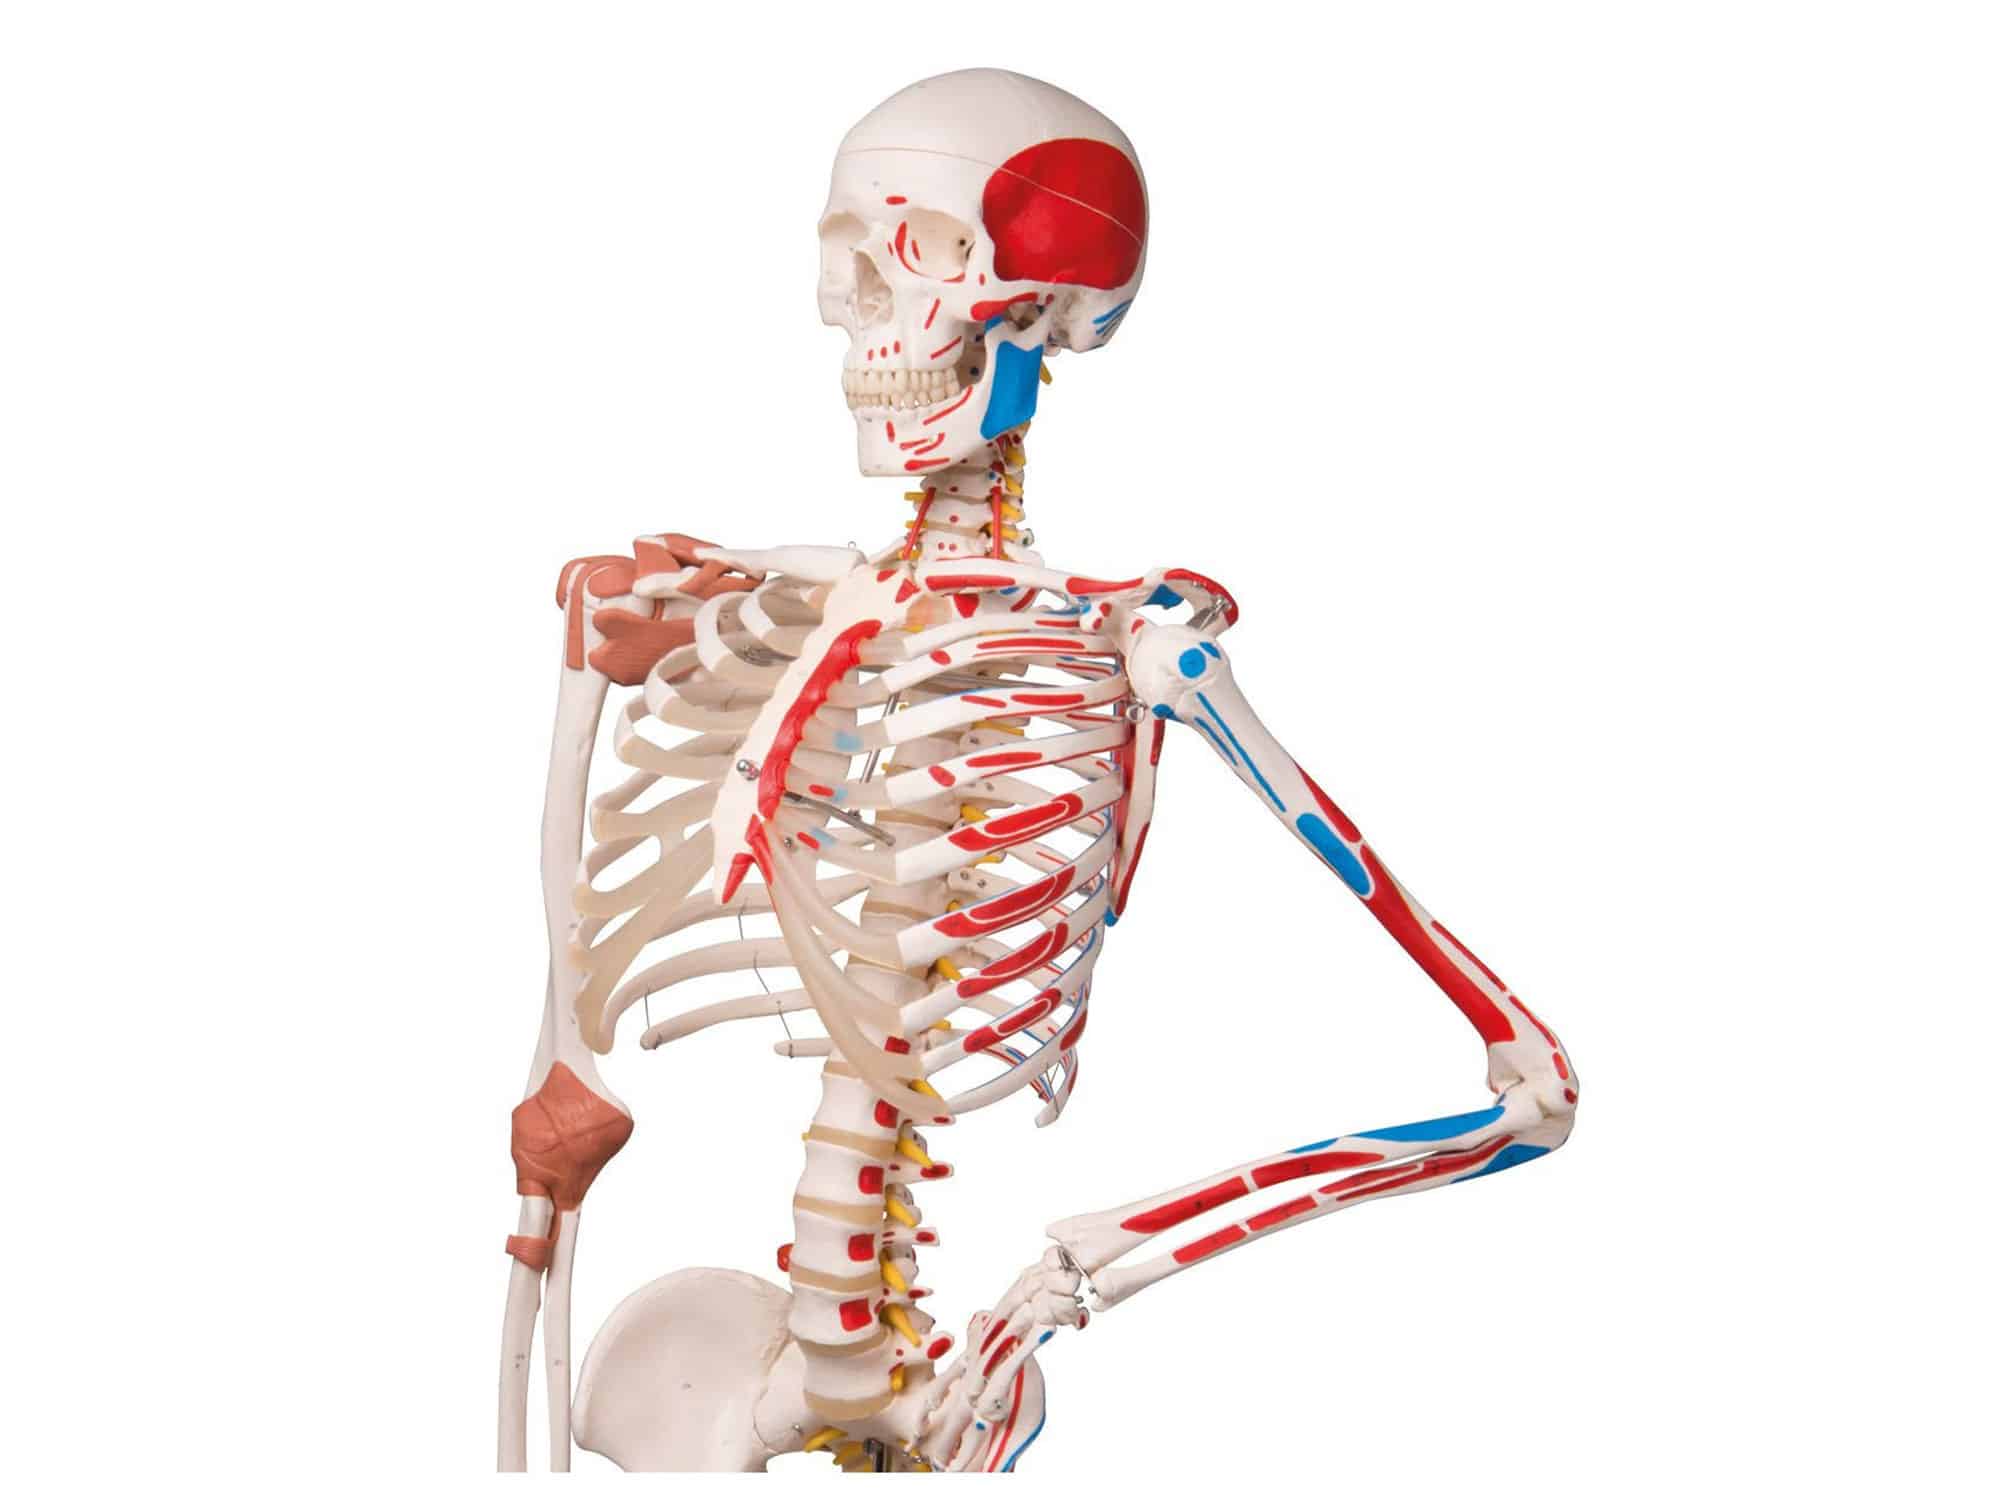 Squelette humain avec muscles et ligaments